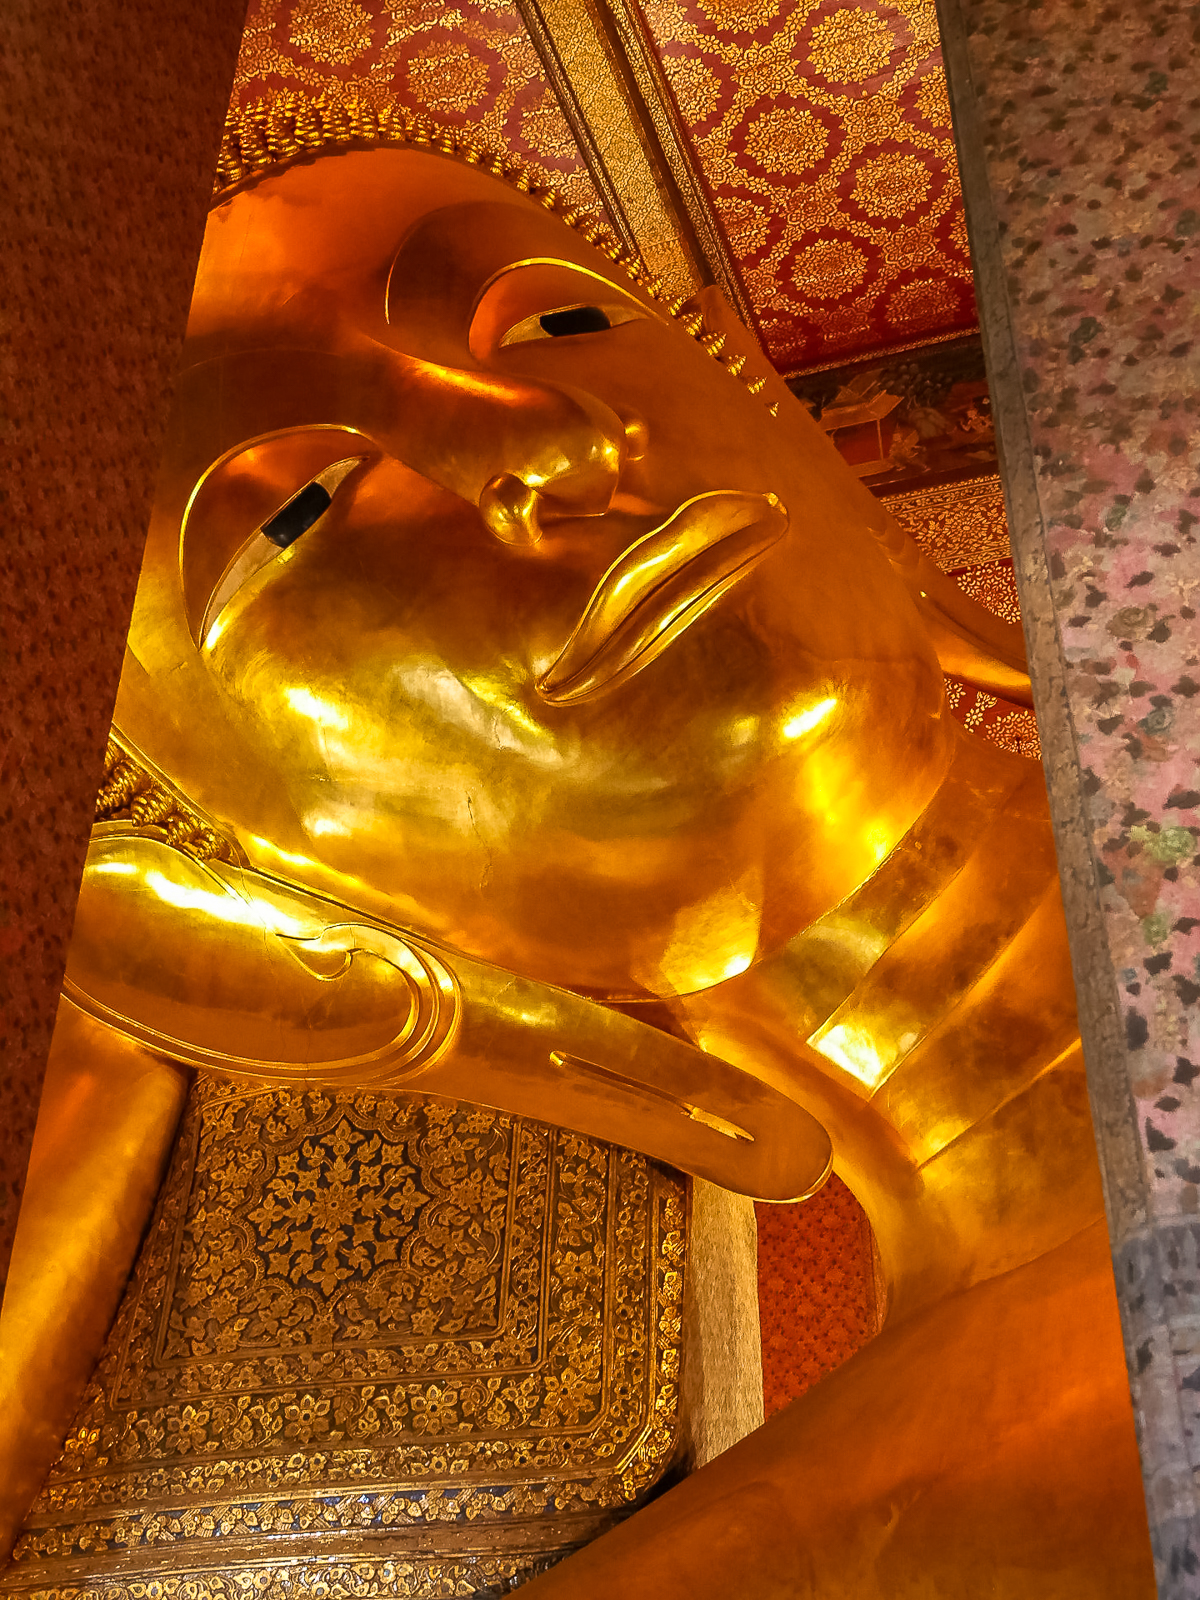 Head of the 150+ foot long reclining Buddha at Wat Pho in Bangkok